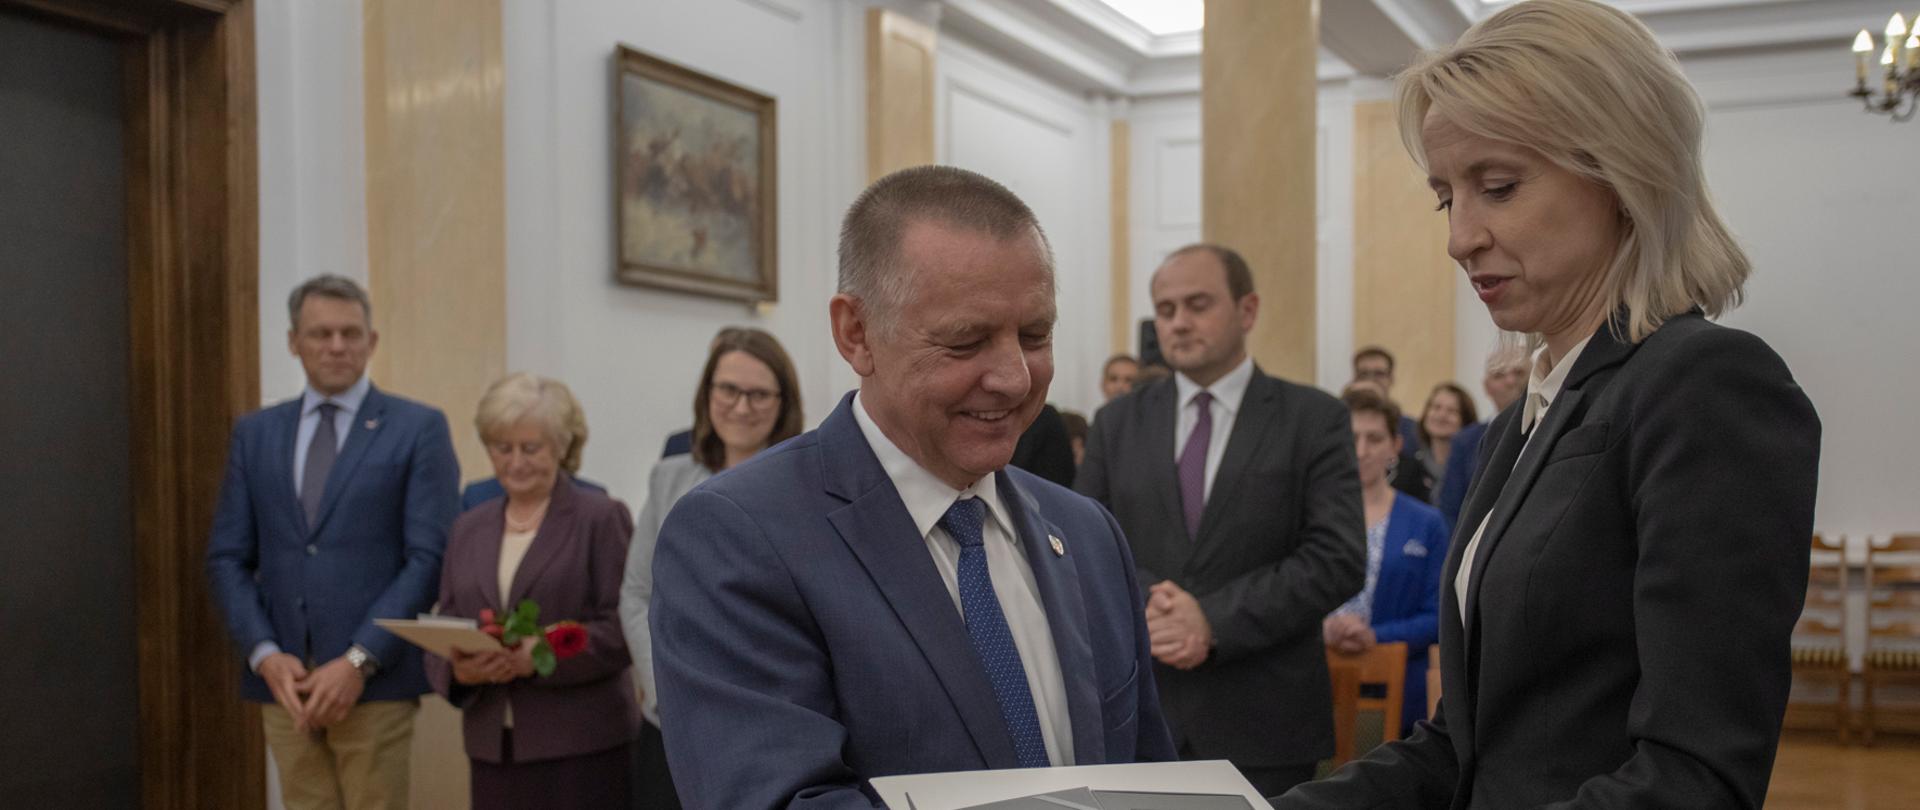 Minister Teresa Czerwińska wręcza medal szefowi KAS Marianowi Banasiowi, w tle pozostali nagrodzeni w sali w MF